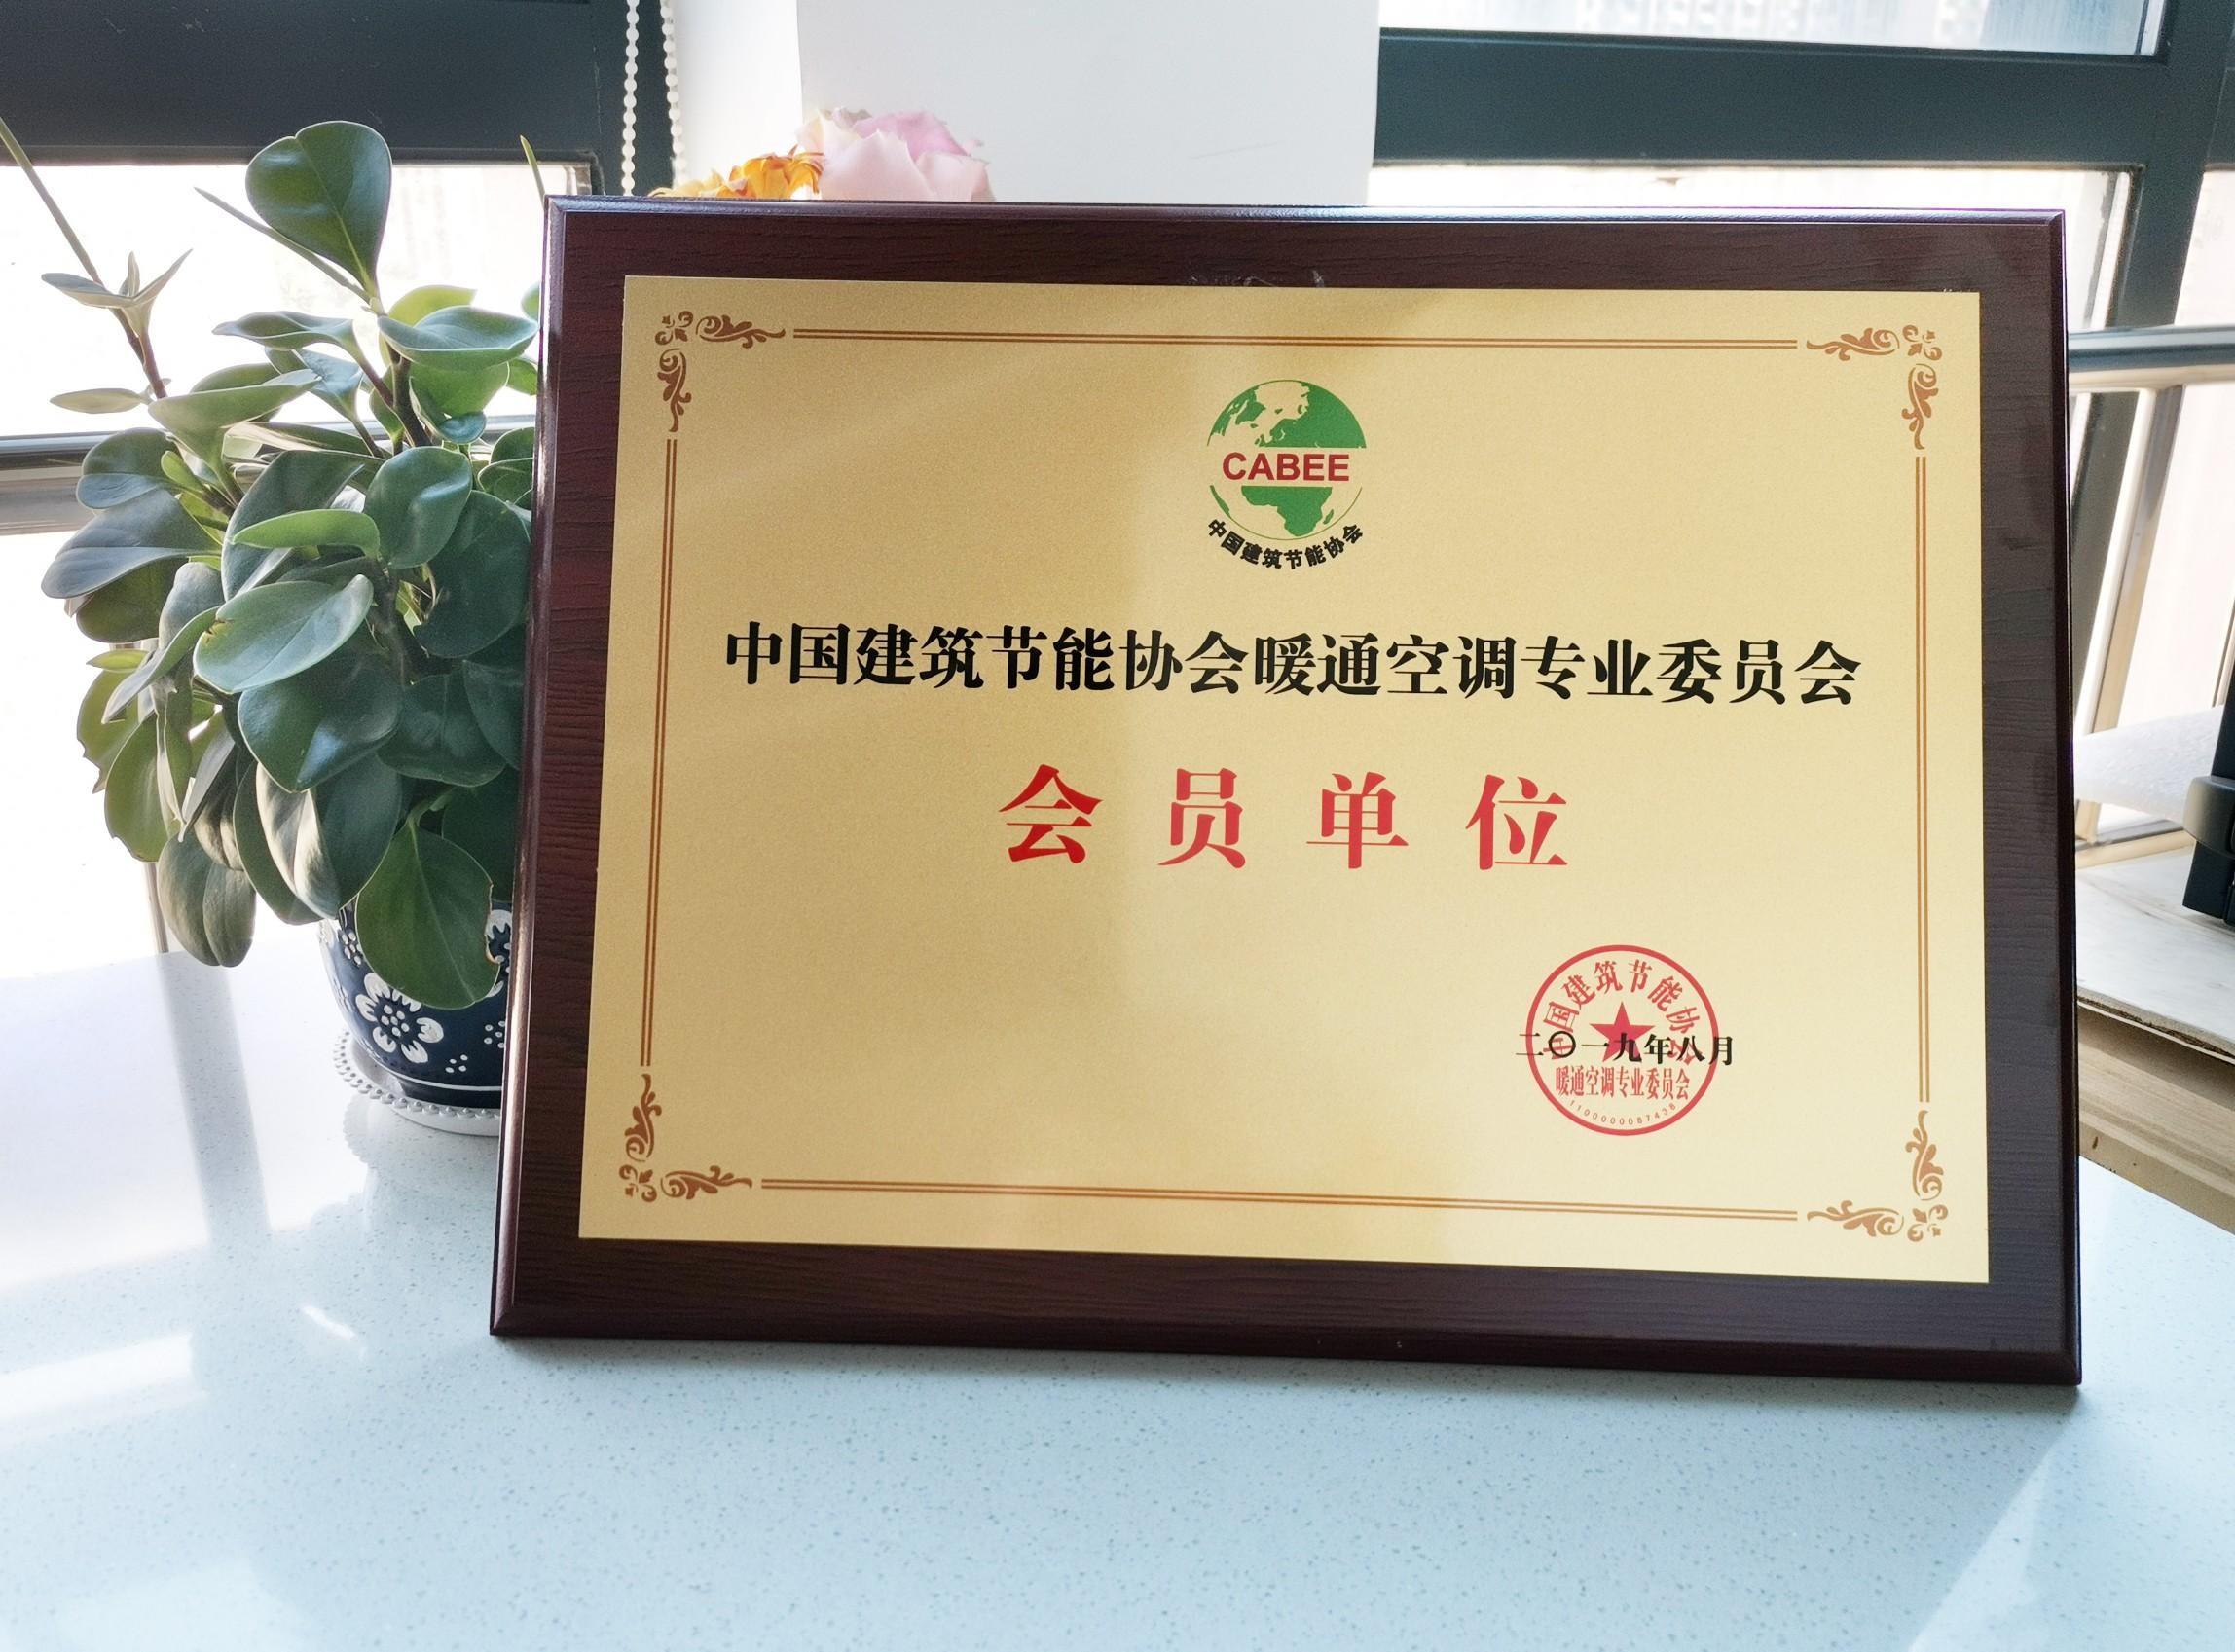 施诺获选为中国建筑节能协会暖通空调专业委员会会员单位 